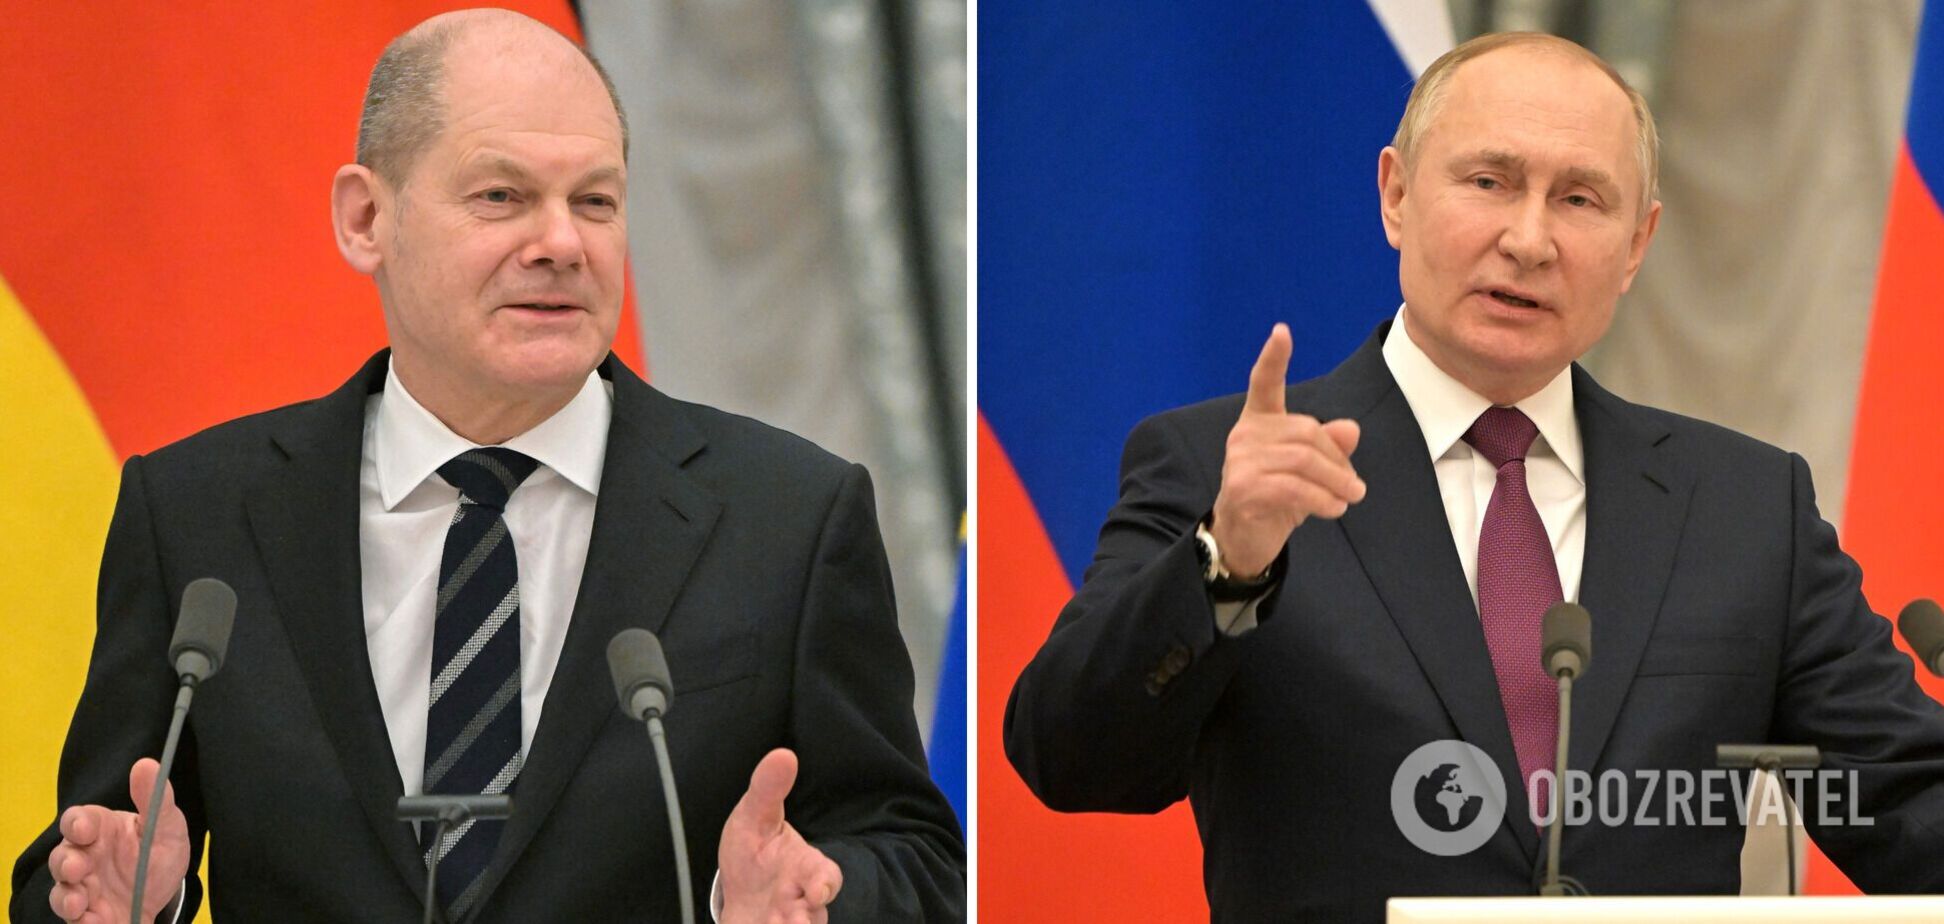 Шольц на переговорах в Москве был 'напористым' и пошутил, что Путин на посту 'не навсегда' – Reuters